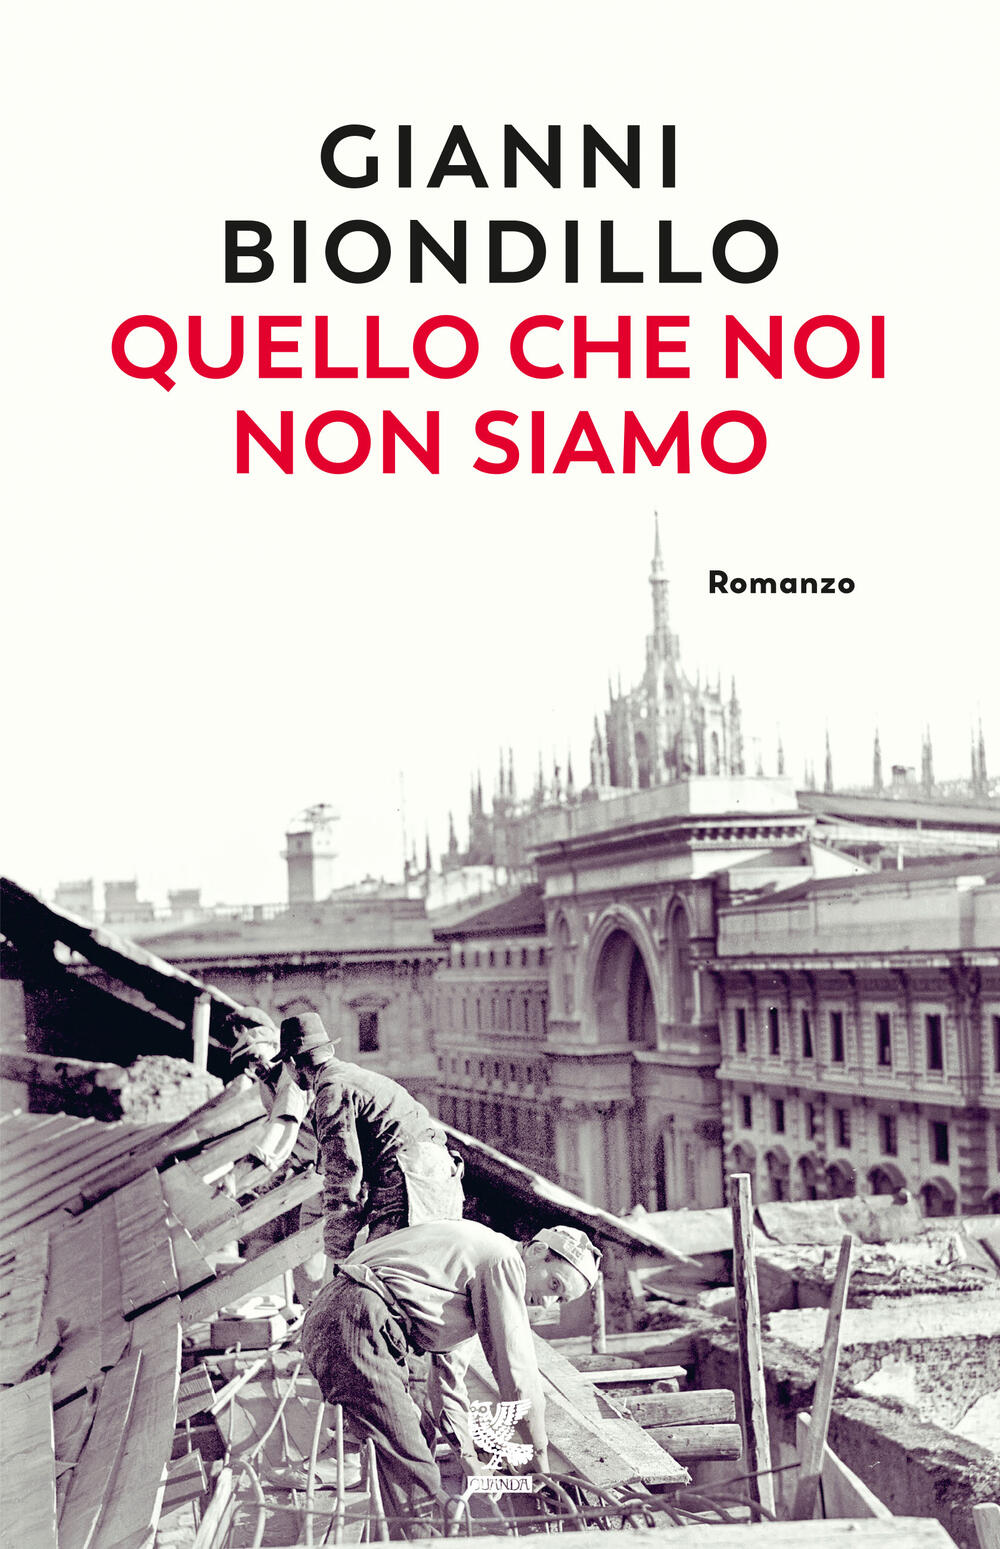 L'ultimo libro di Gianni Biondillo: l'intervista allo scrittore